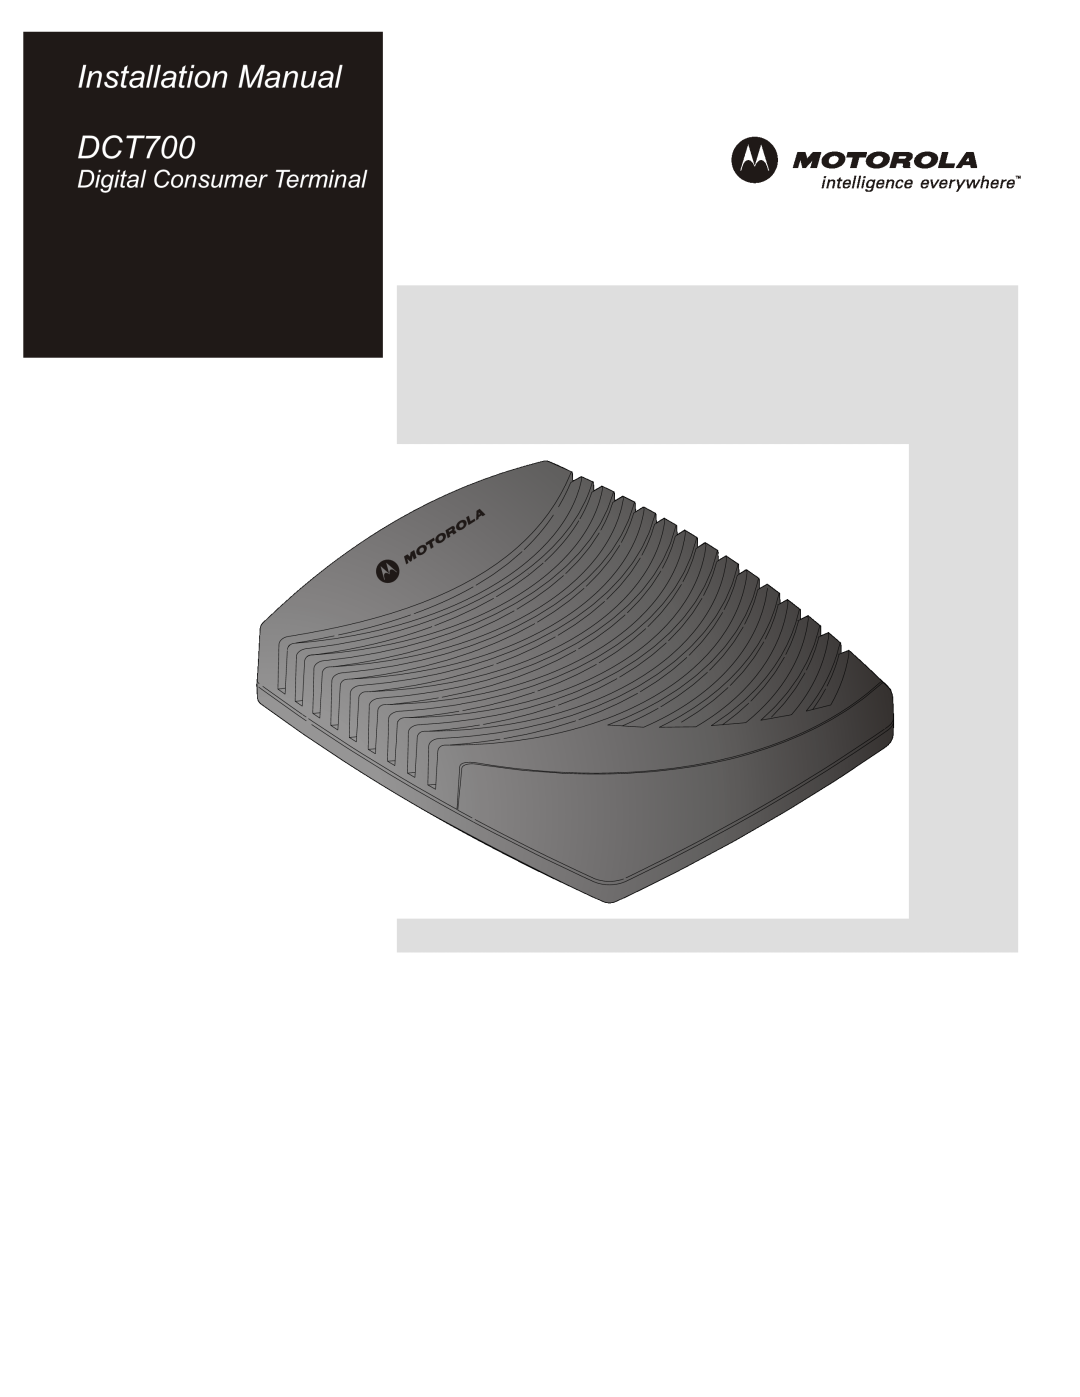 Motorola DTC700 installation manual Installation Manual DCT700, Digital Consumer Terminal 